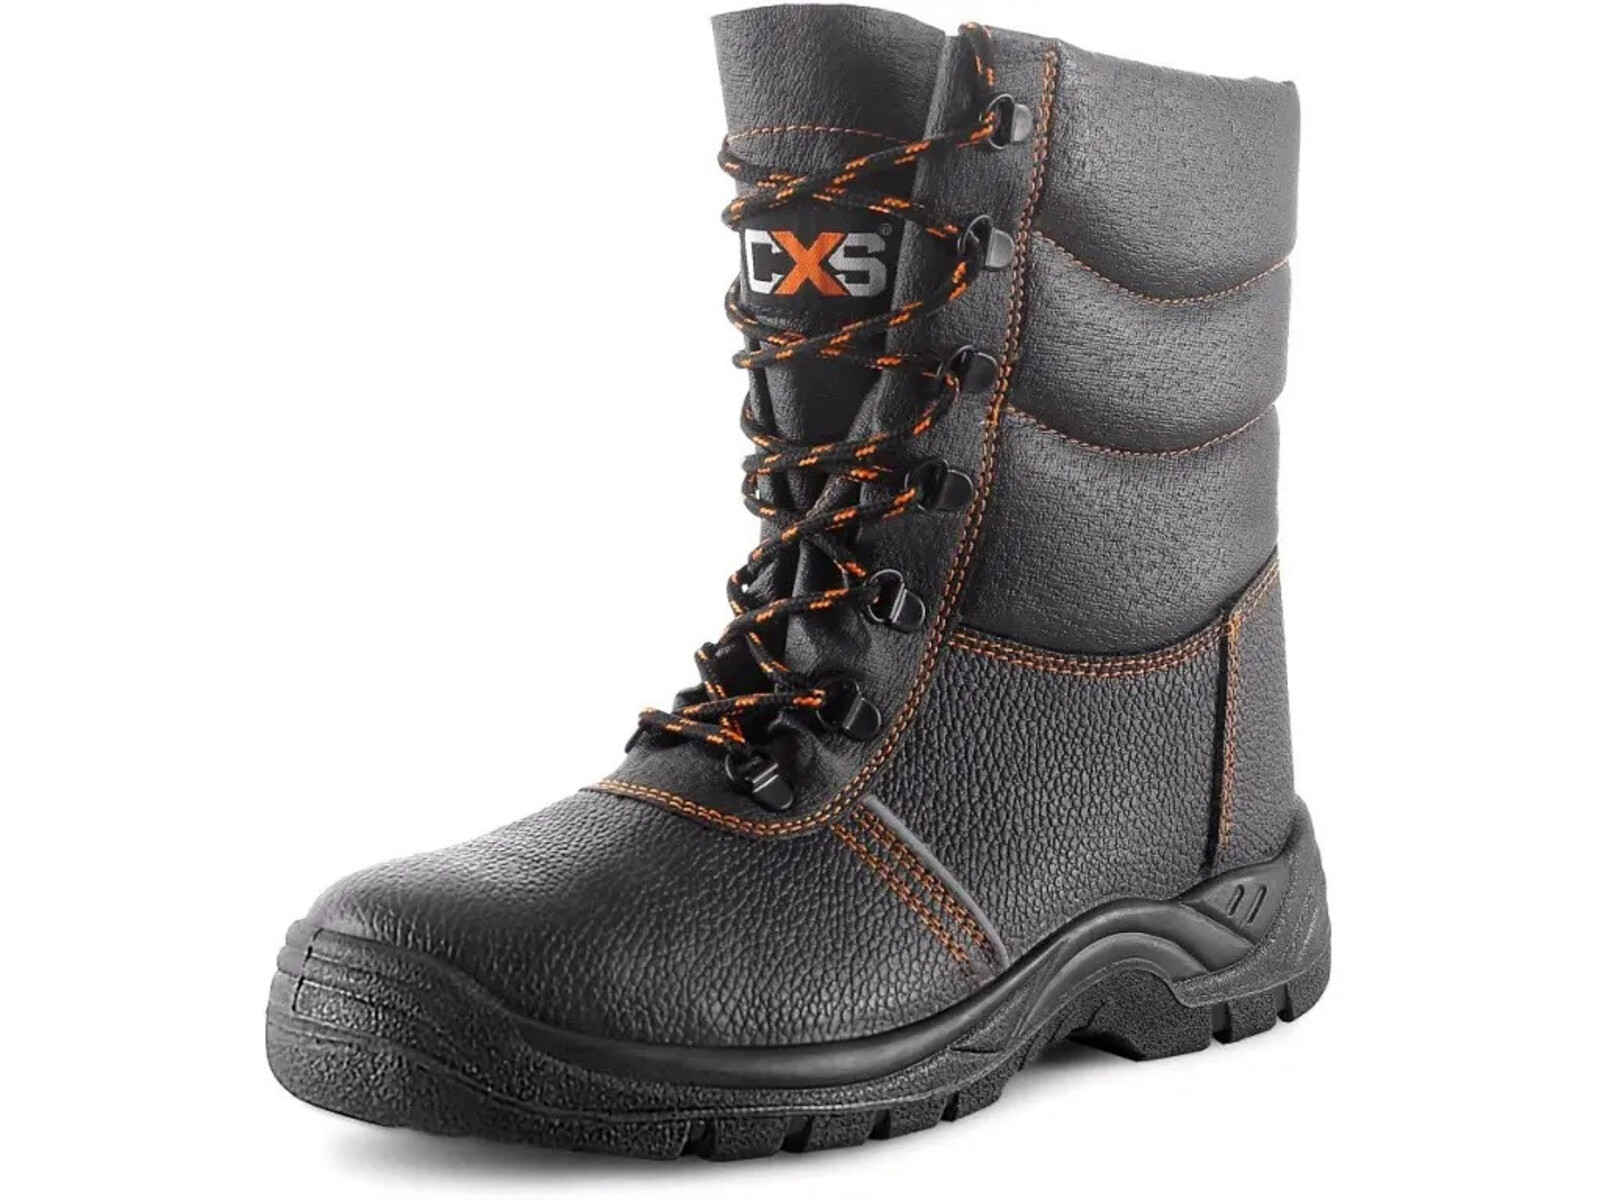 Zimná bezpečnostná poloholeňová obuv CXS Stone Topaz Winter S3 SRC - veľkosť: 37, farba: čierna/oranžová